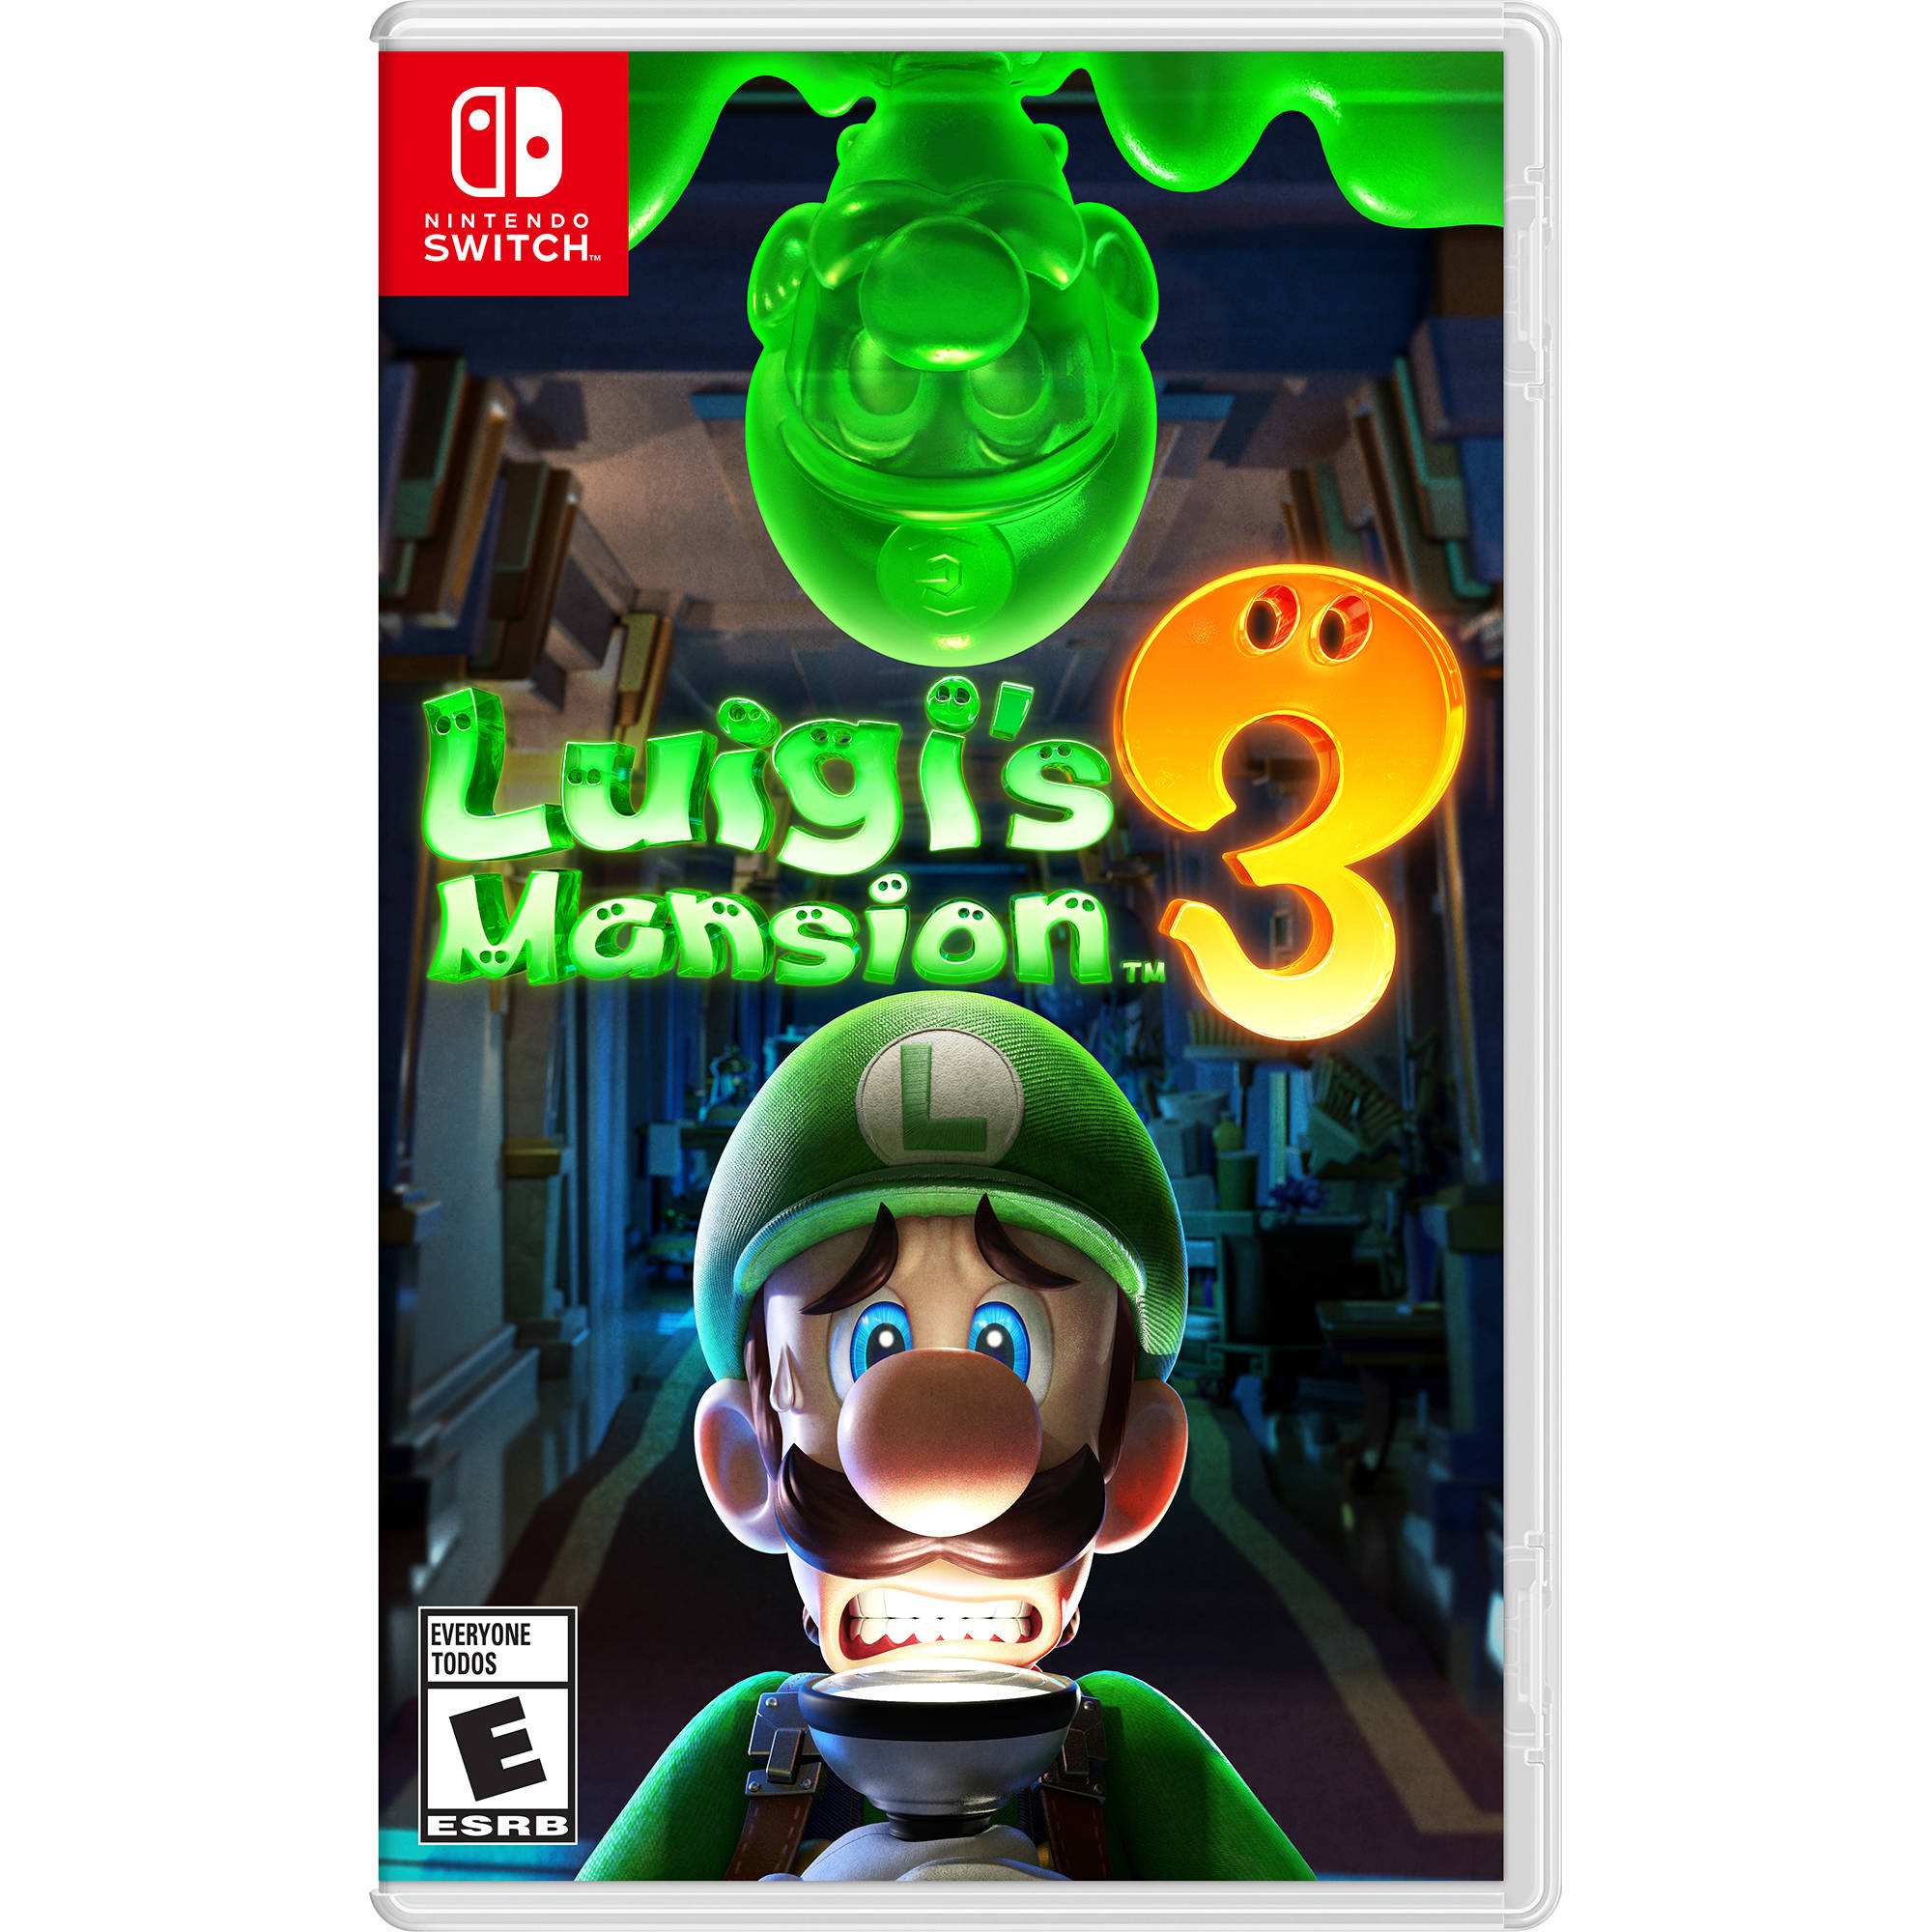 games similar to luigi's mansion 3 switch